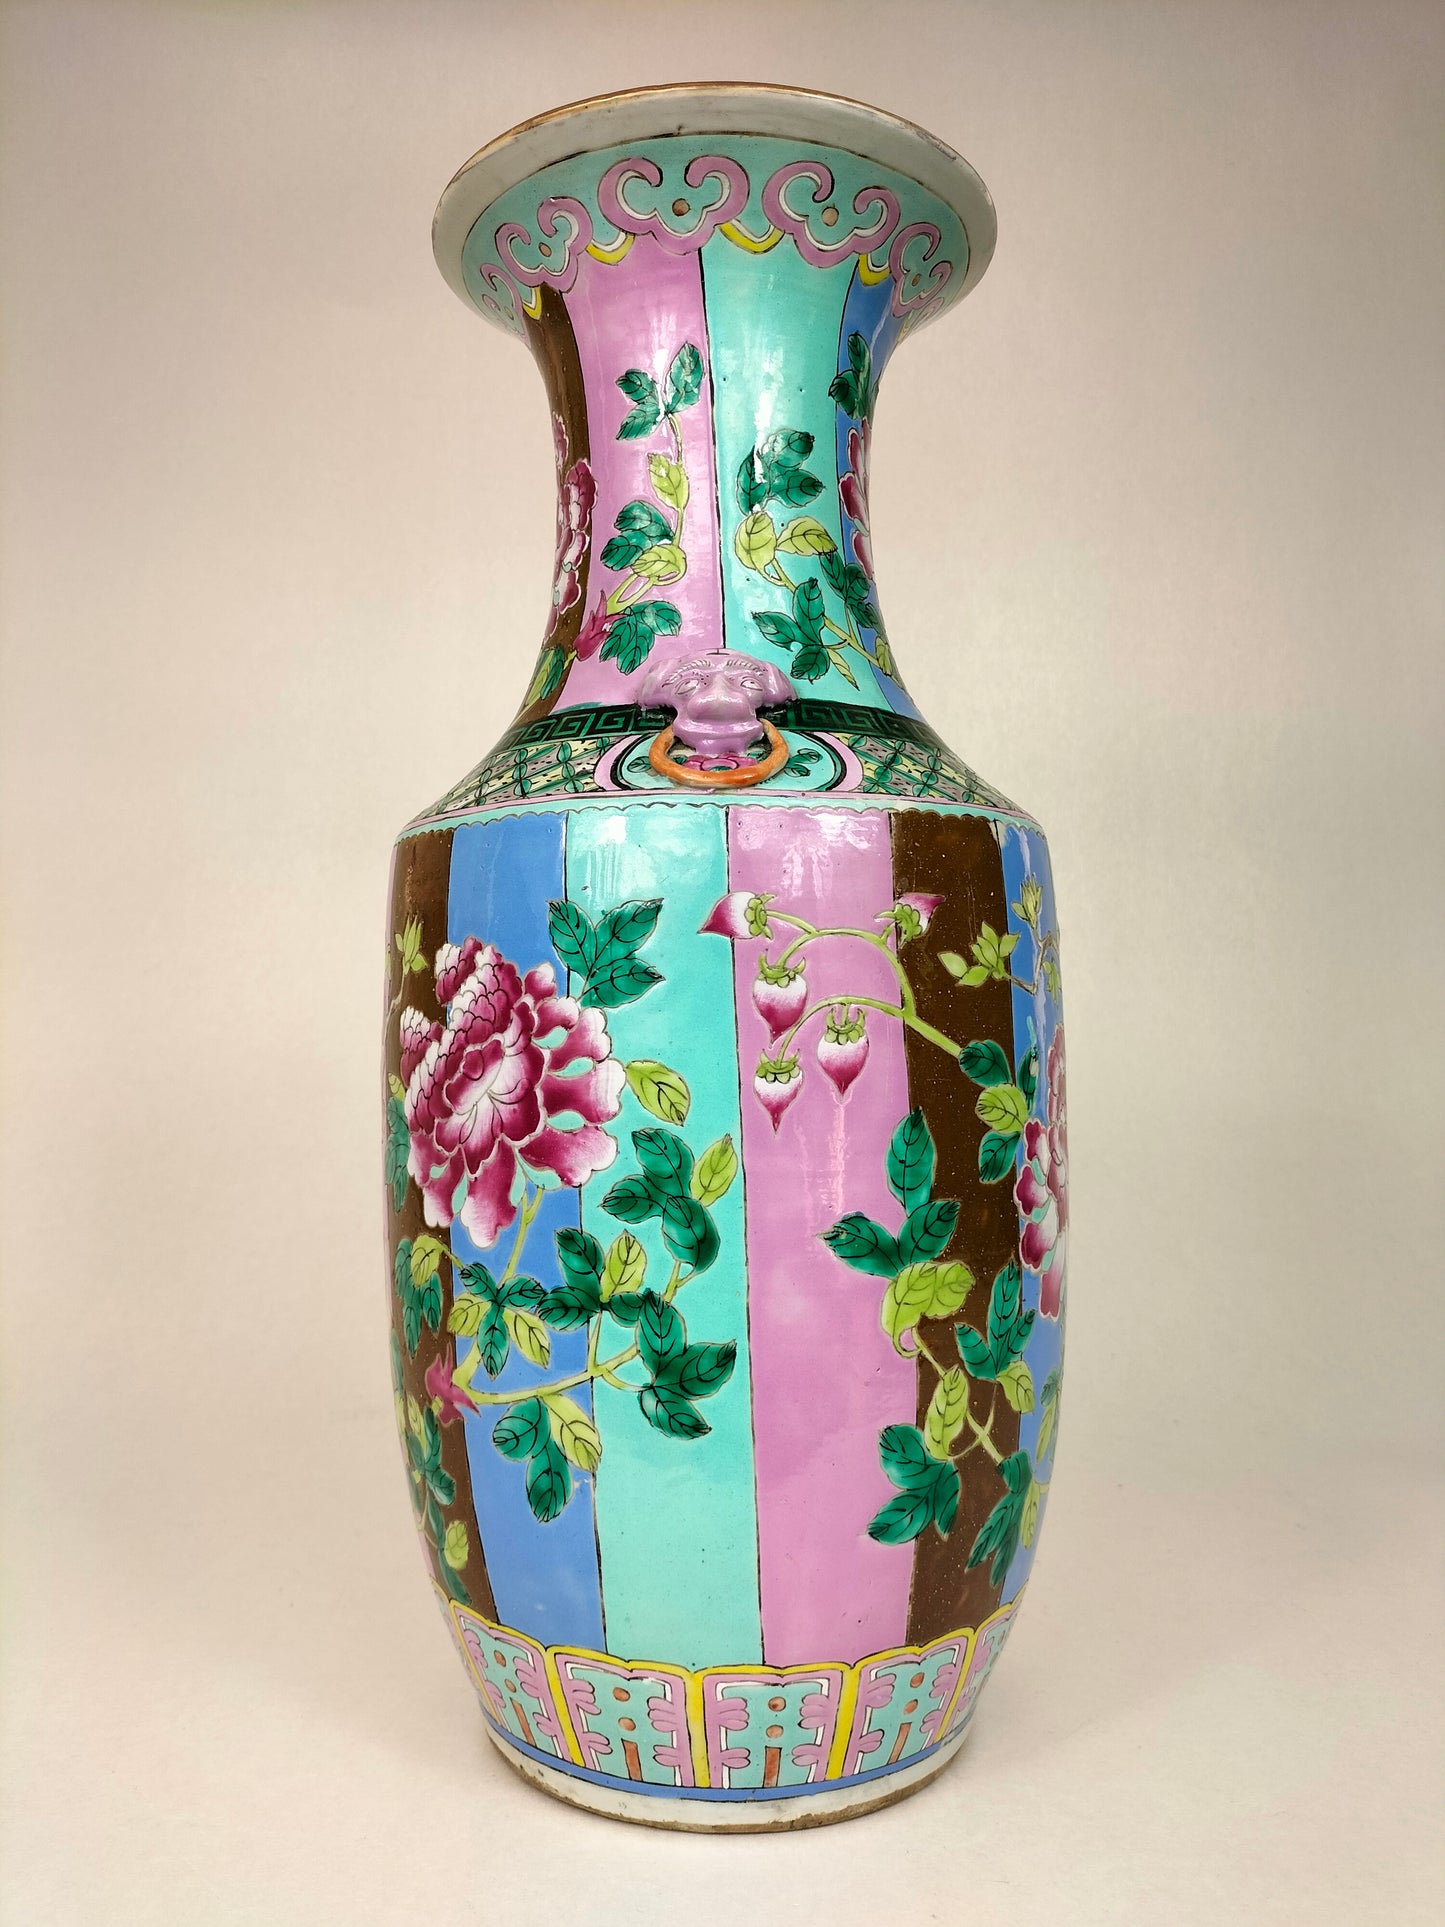 Antigo vaso chinês da família rosa com alças de foo dog e decoração de flores // Dinastia Qing - século XIX